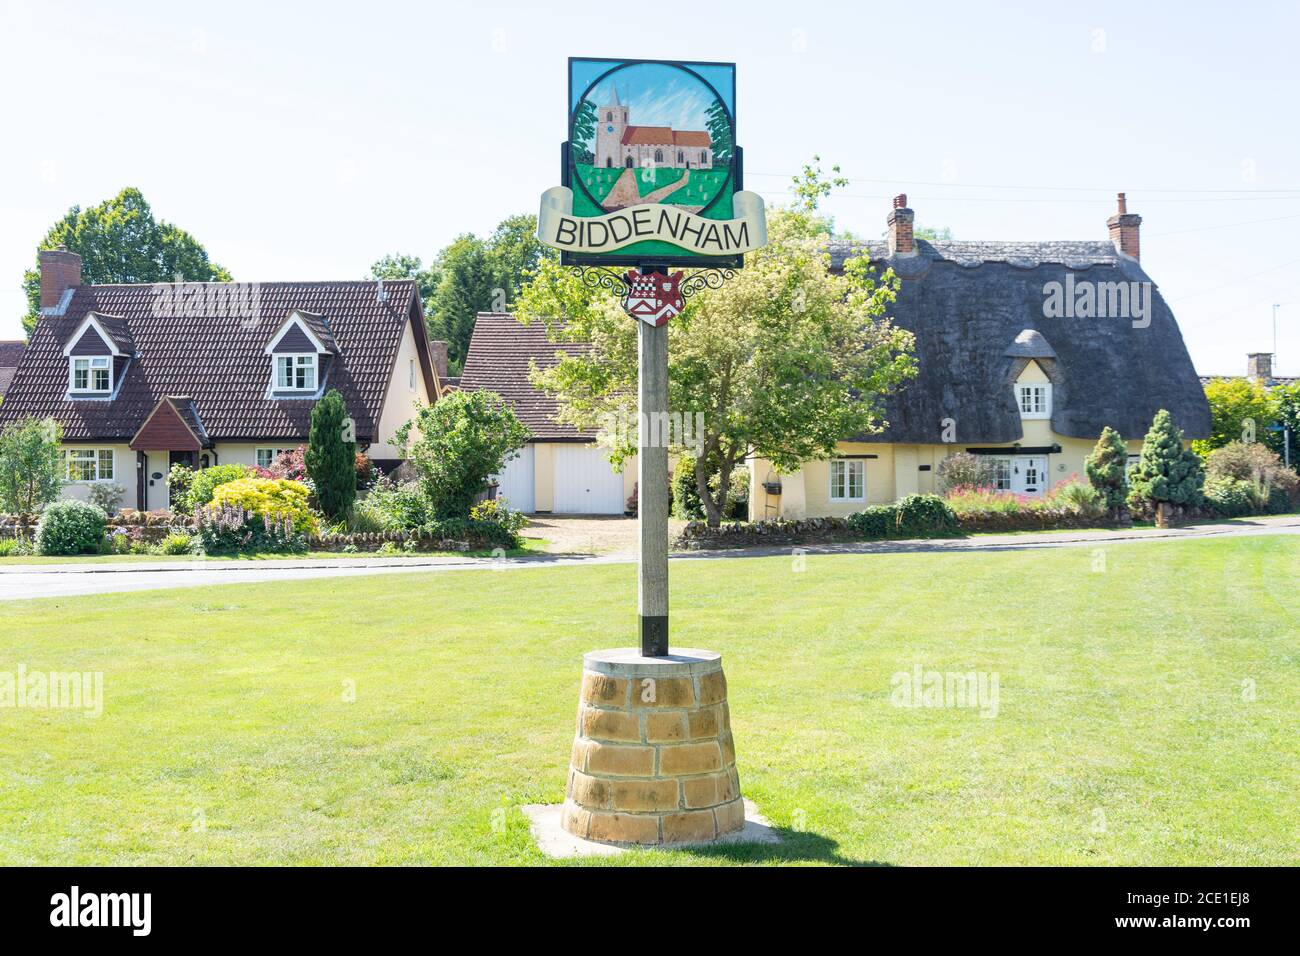 Maison de chaume et panneau de village, The Green, Biddenham, Bedfordshire, Angleterre, Royaume-Uni Banque D'Images